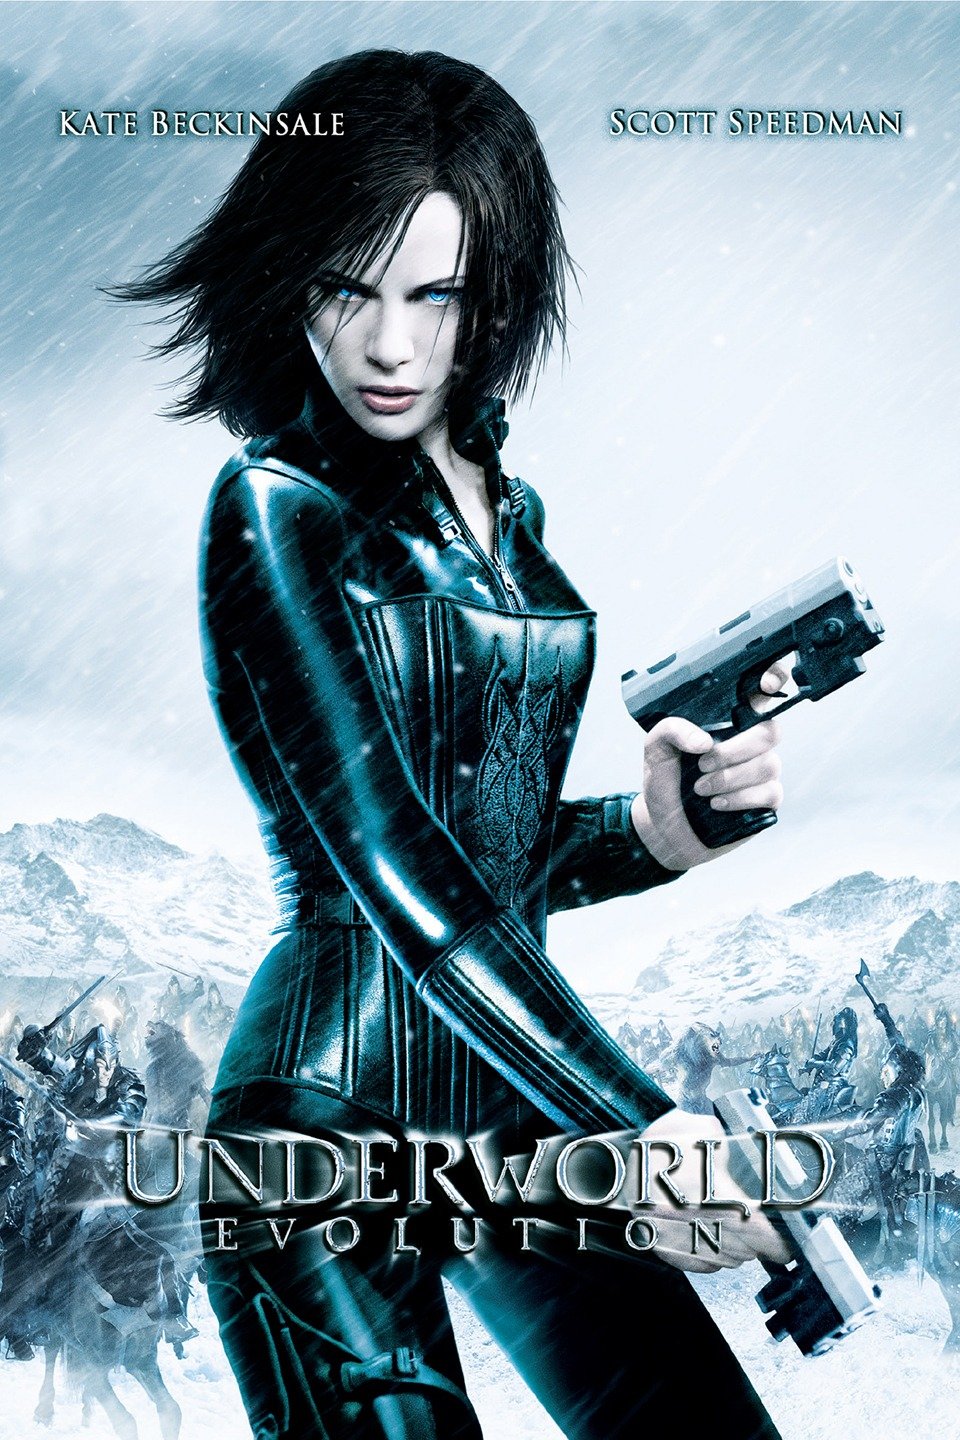 watch underworld 5 full movie